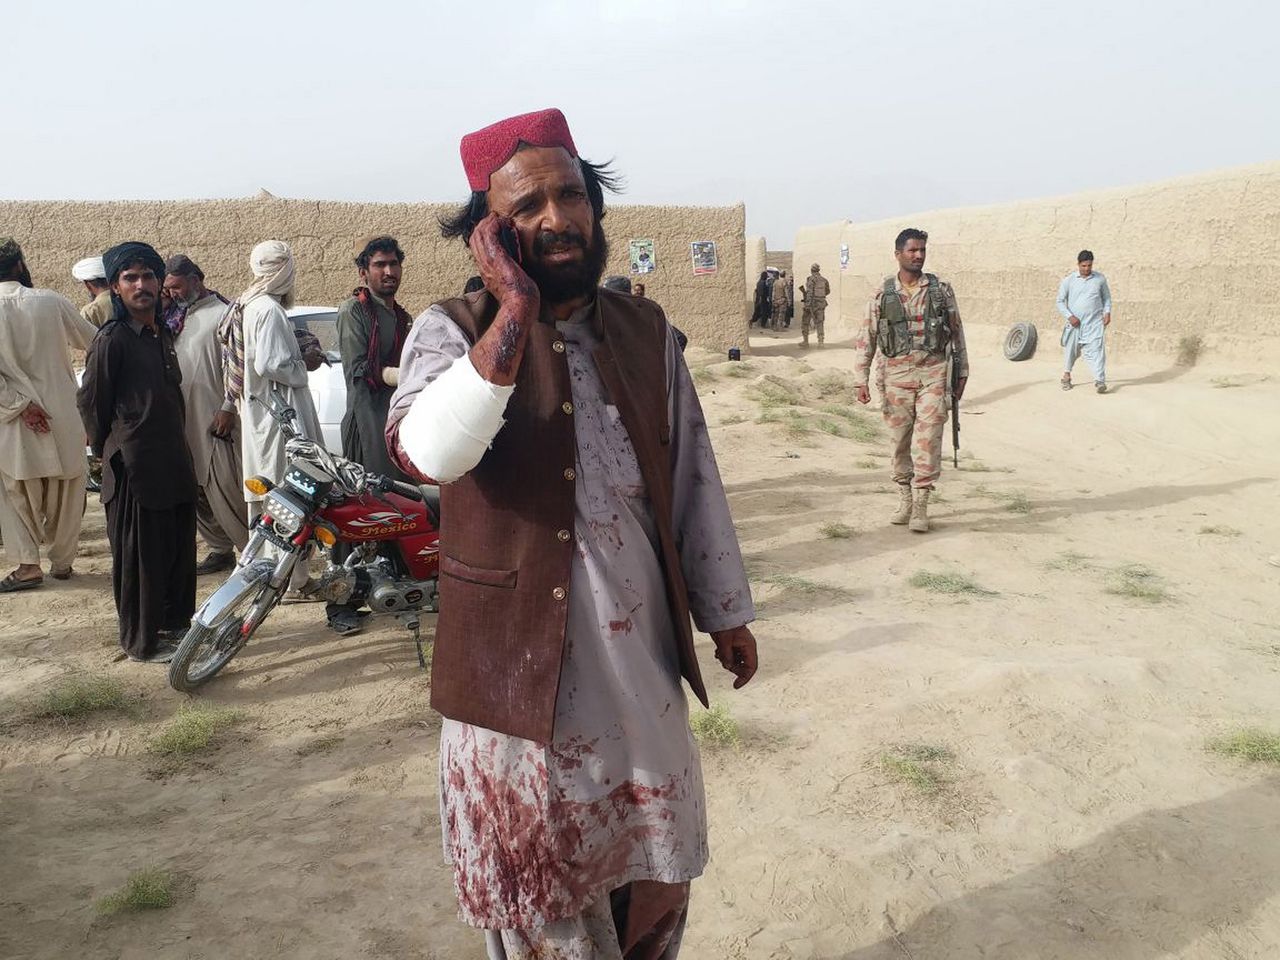 Een man onder het bloed, loopt bellend weg na de zelfmoordaanslag vrijdag op de verkiezingsbijeenkomst van een seculiere partij in Baluchistan. Er vielen zeker 128 doden. Foto Stringer/EPA